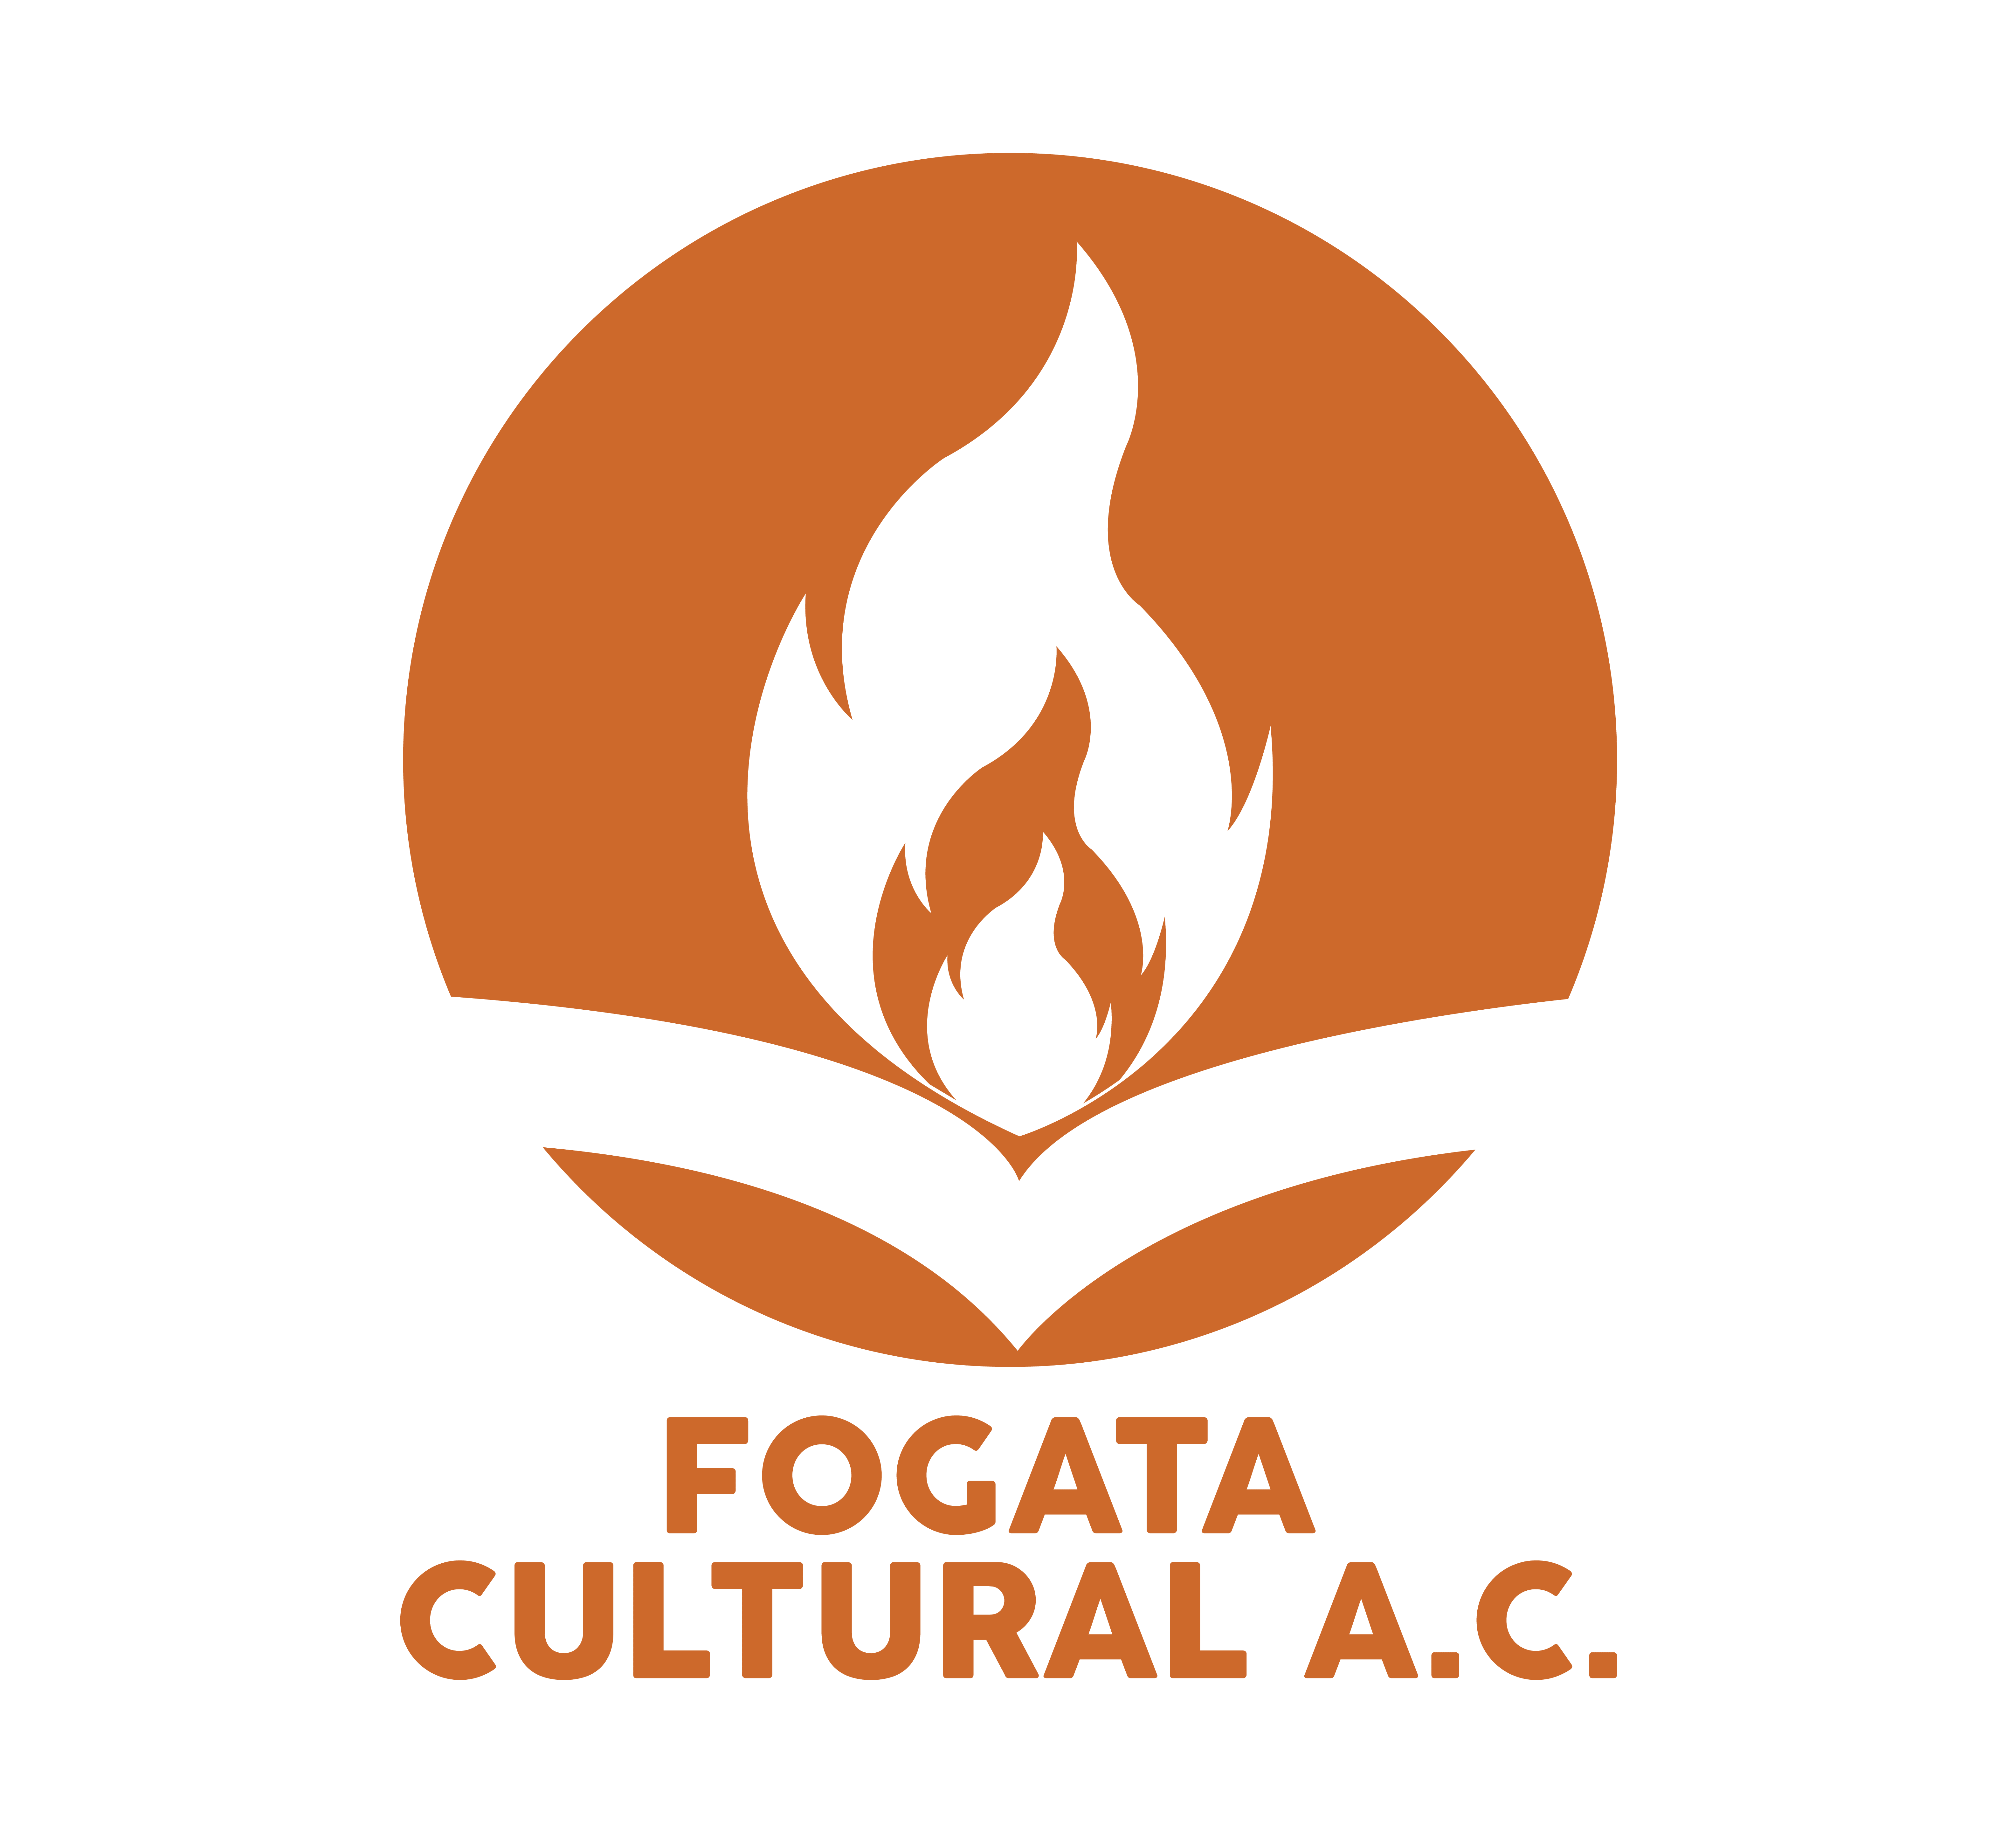 Fogata Cultural A. C.